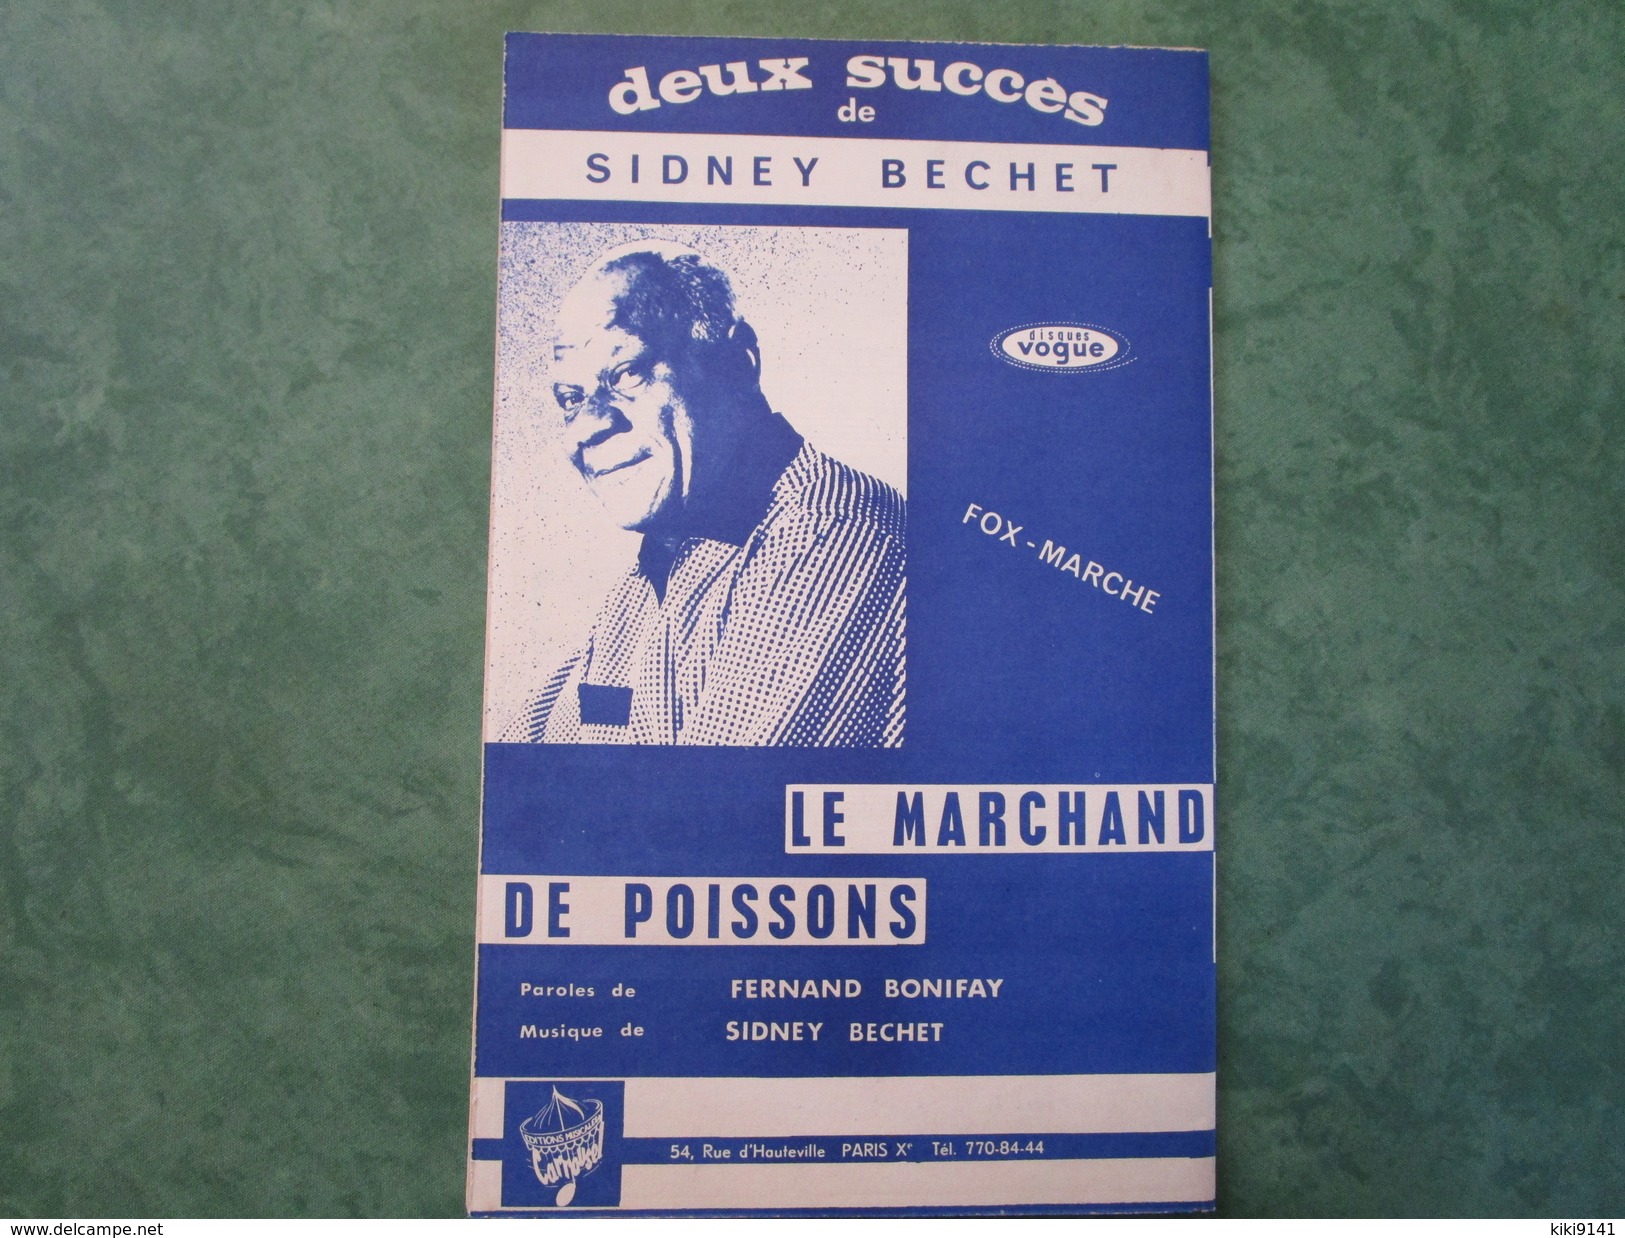 SIDNEY BECHET - Les Oignons Et Le Marchand De Poissons - Tous Instruments - 36 Pages - Jazz